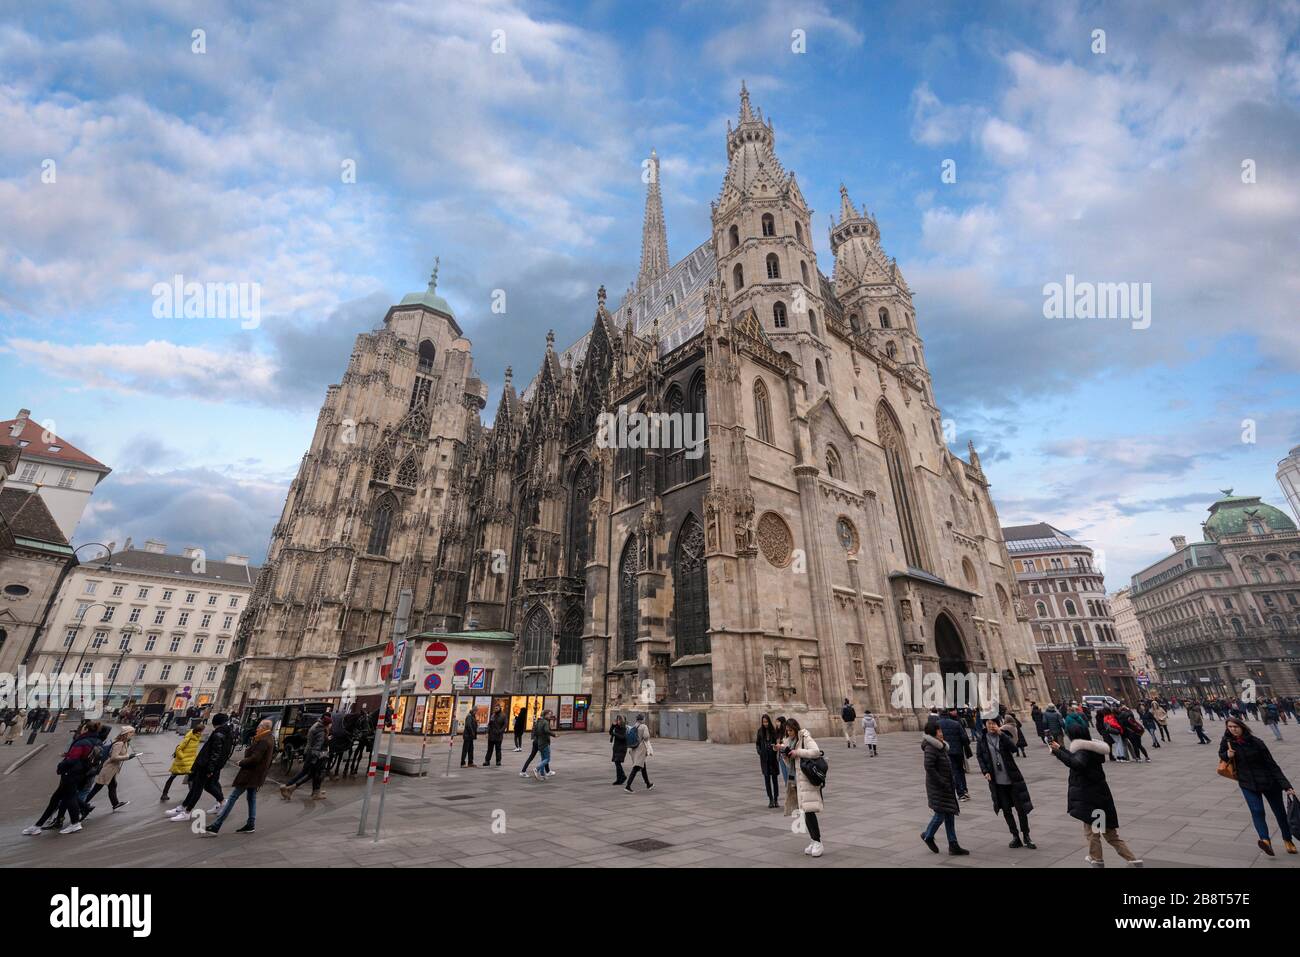 Viena, Austria. Catedral de San Esteban en el centro de Viena. Iglesia católica Romana con ventanas de vidrio grabado de estilo gótico. Stephansdom Foto de stock